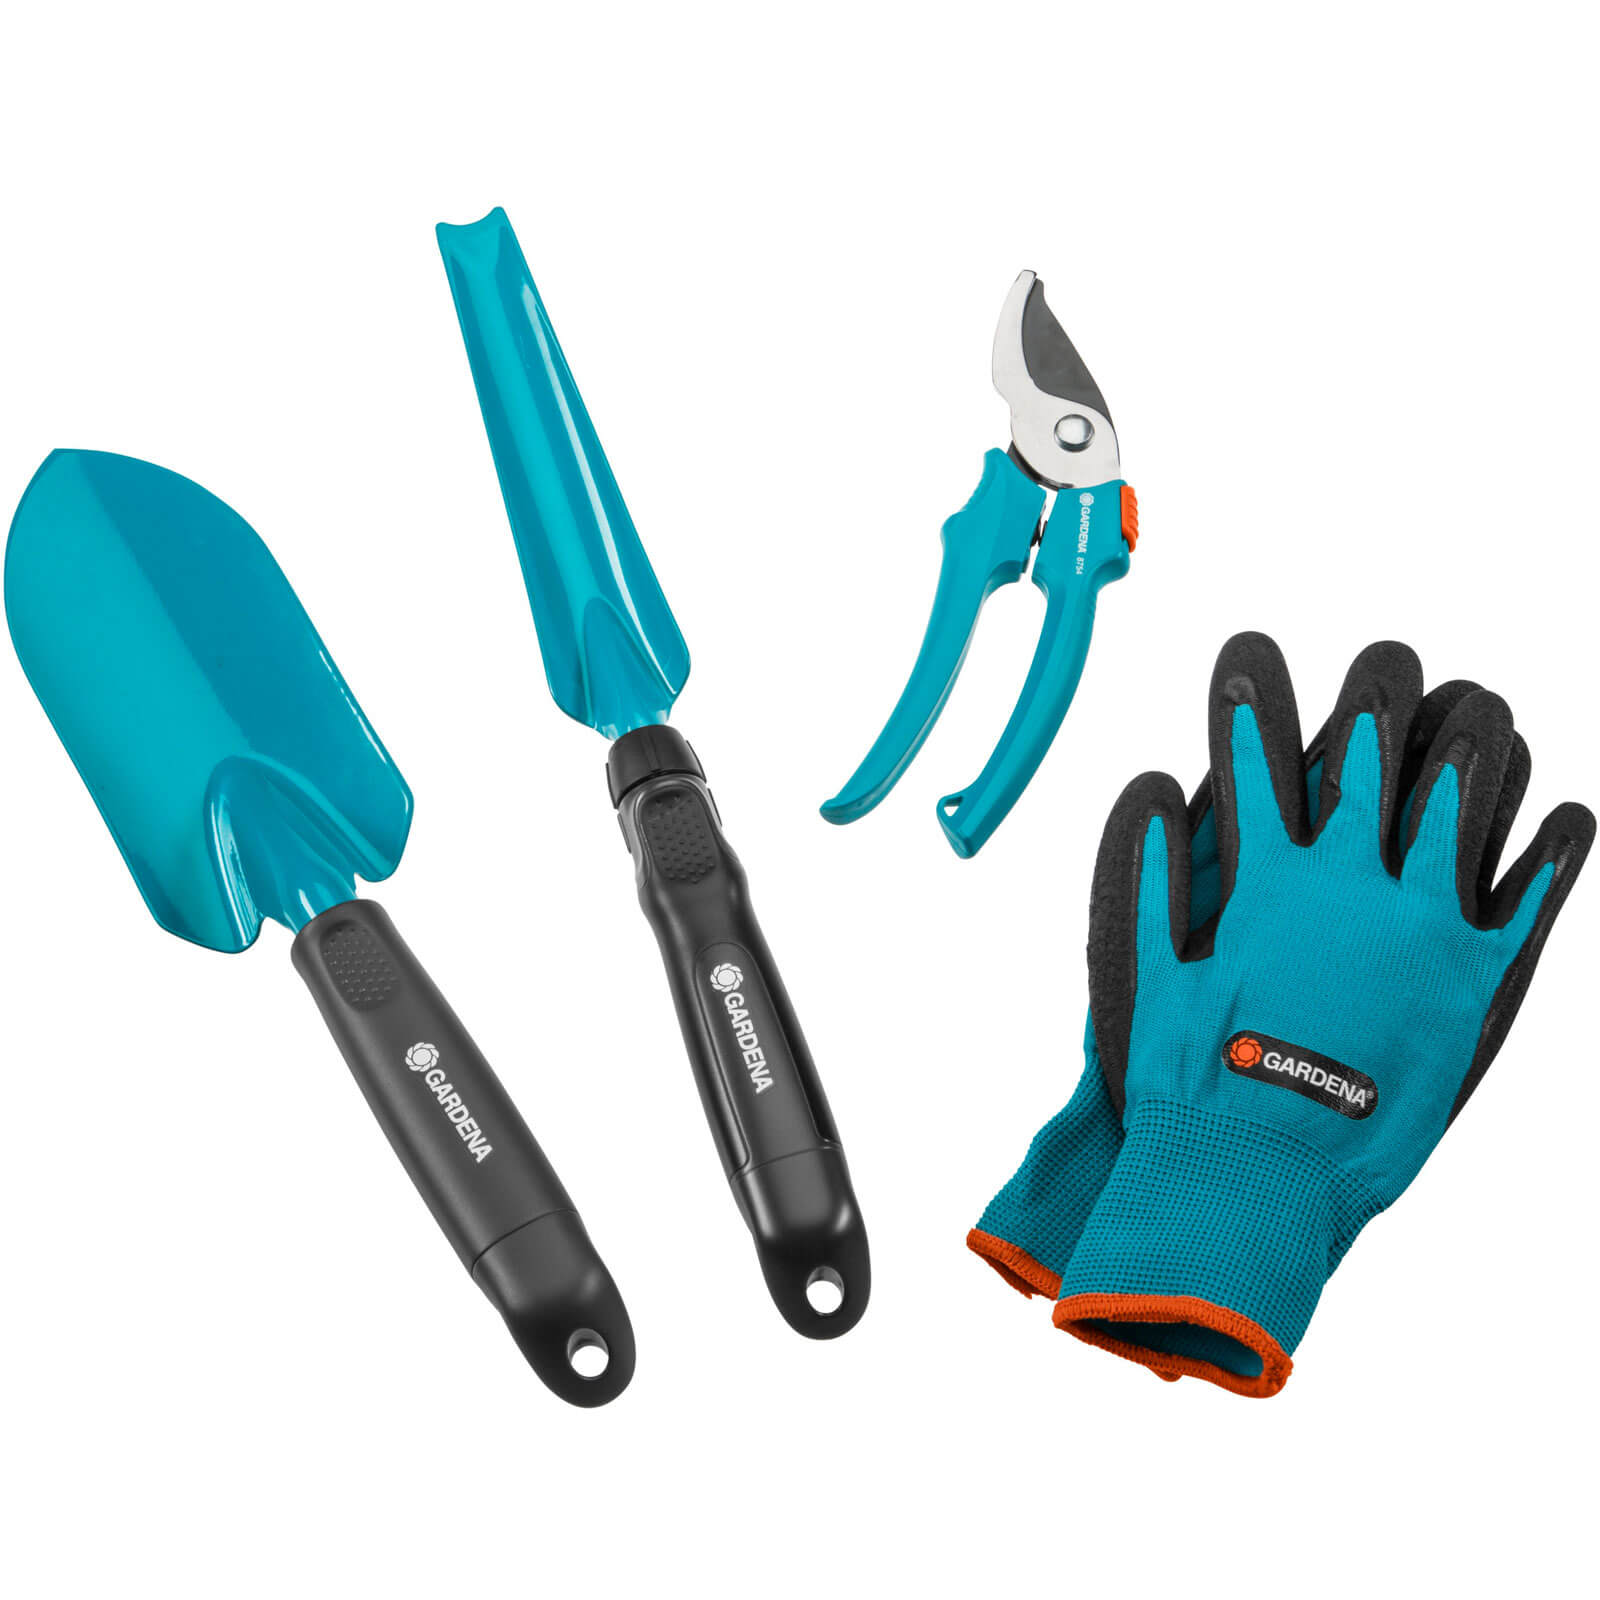 Image of Gardena City Gardening Basic Equipment Hand Tool Gift Pack